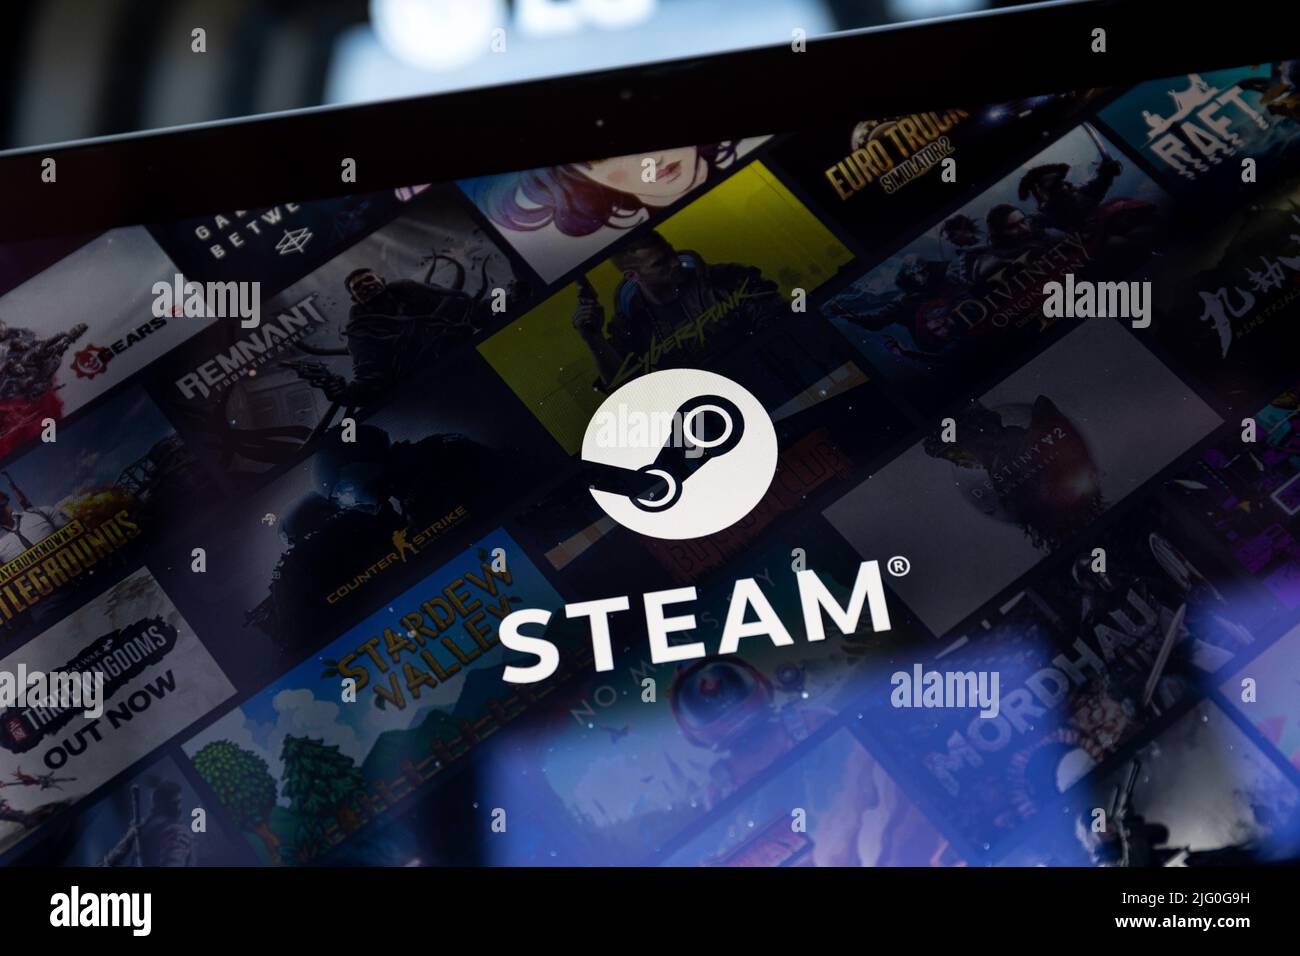 Applicazione Steam sullo schermo del PC. Steam è un servizio di distribuzione digitale e negozio di videogiochi di Valve. Foto Stock